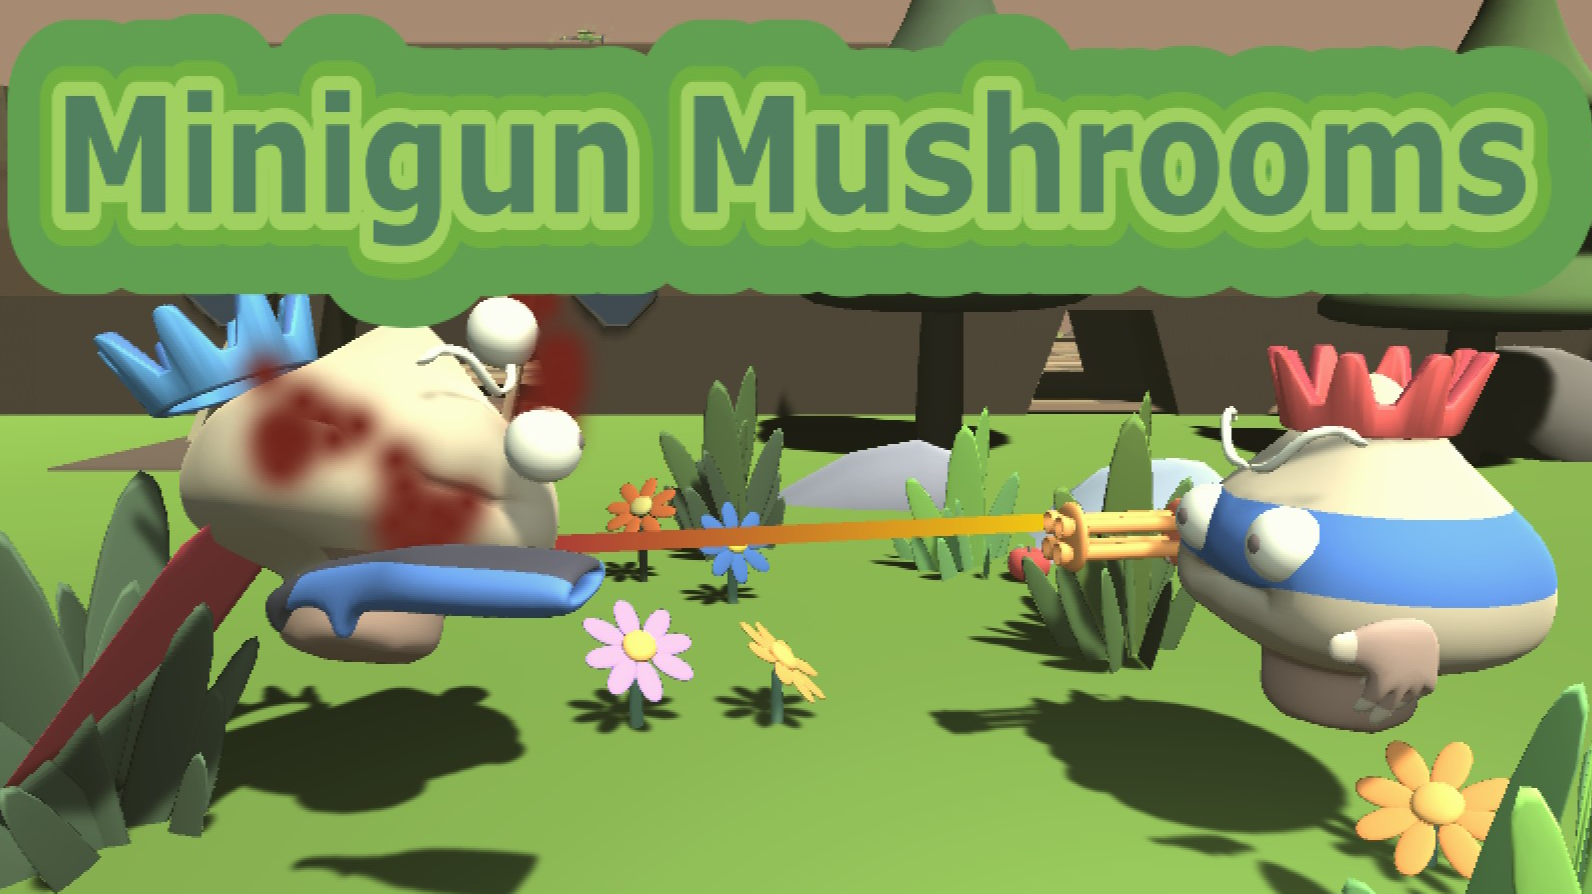 Minigun Mushrooms Game Image